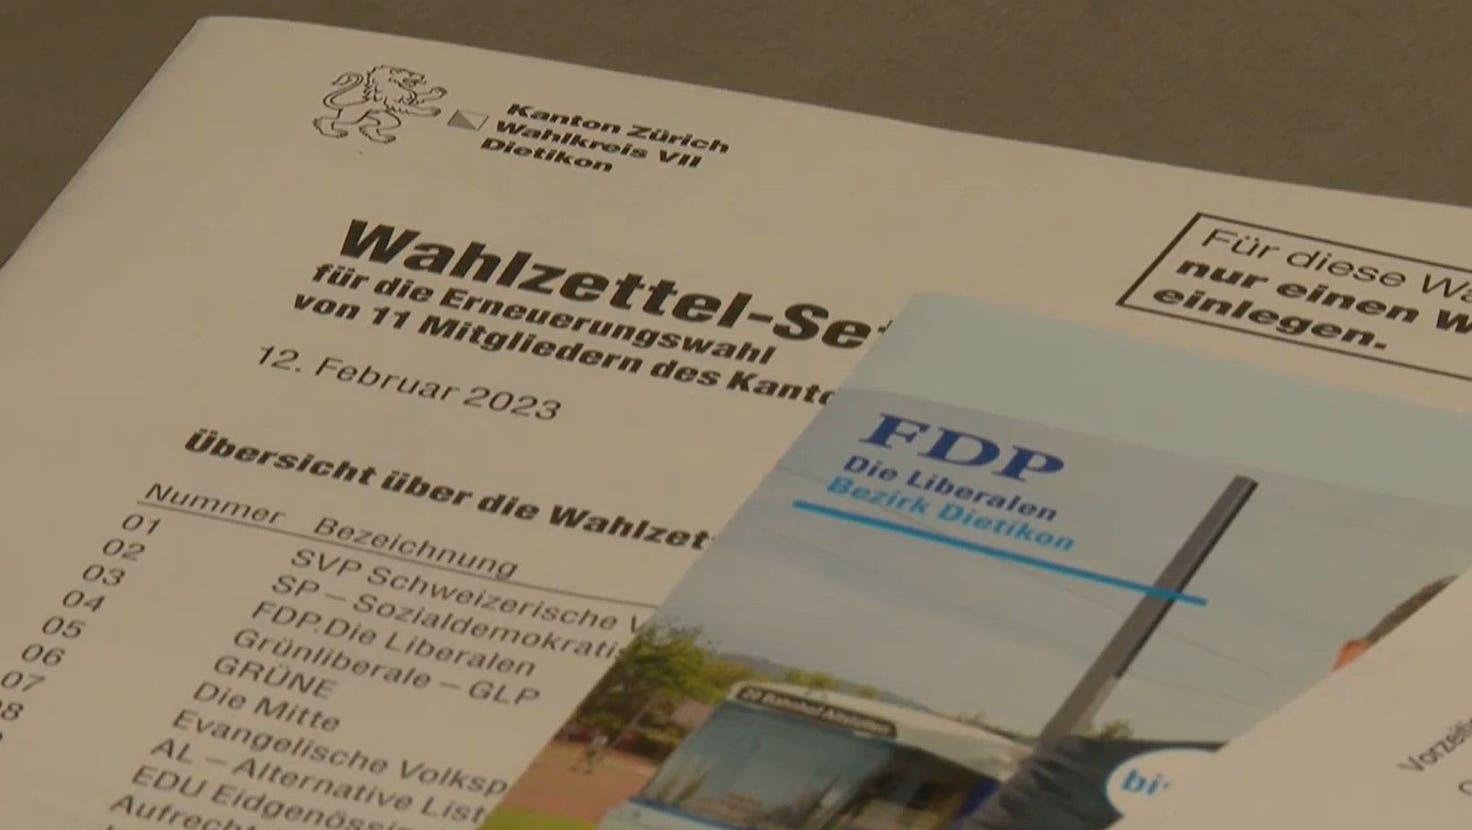 Die Gemeinde Geroldswil hatte den Wahlcouverts für die Kantonsrats- und Regierungsratswahlen 2023 einen FDP-Flyer beigelegt, der für die FDP-Kantonsratskandidierenden und die FDP-Regierungsratskandidierenden warb. Das war unzulässig, wie nun auch die Antwort des Kantons auf den Stimmrechtsrekurs zeigt. (TeleZüri)